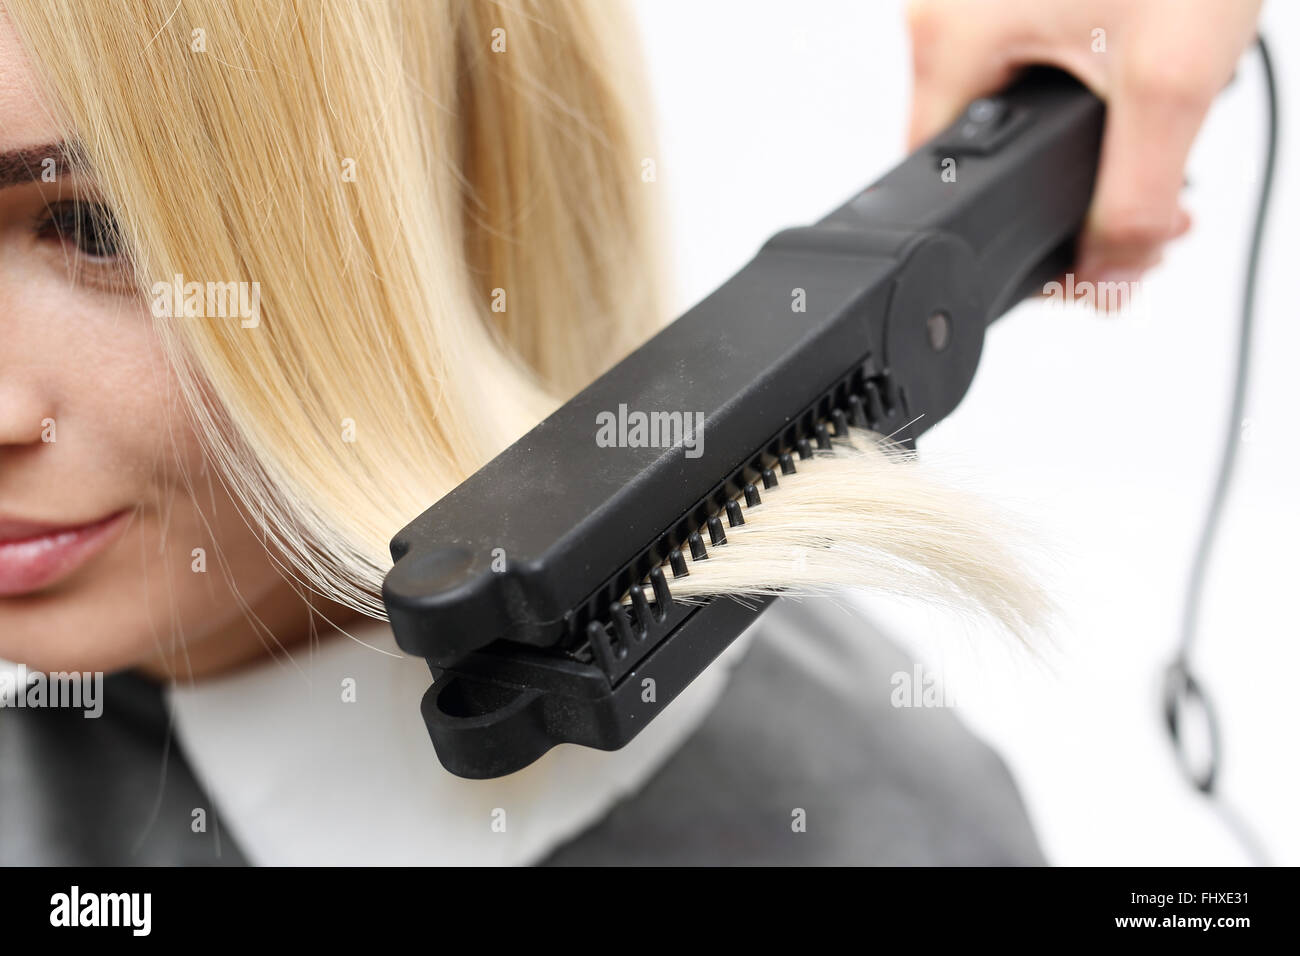 Iron barbershops, hair straightening.. Keratin hair straightening.. Hairdresser hairstyle models using the straightener . Stock Photo